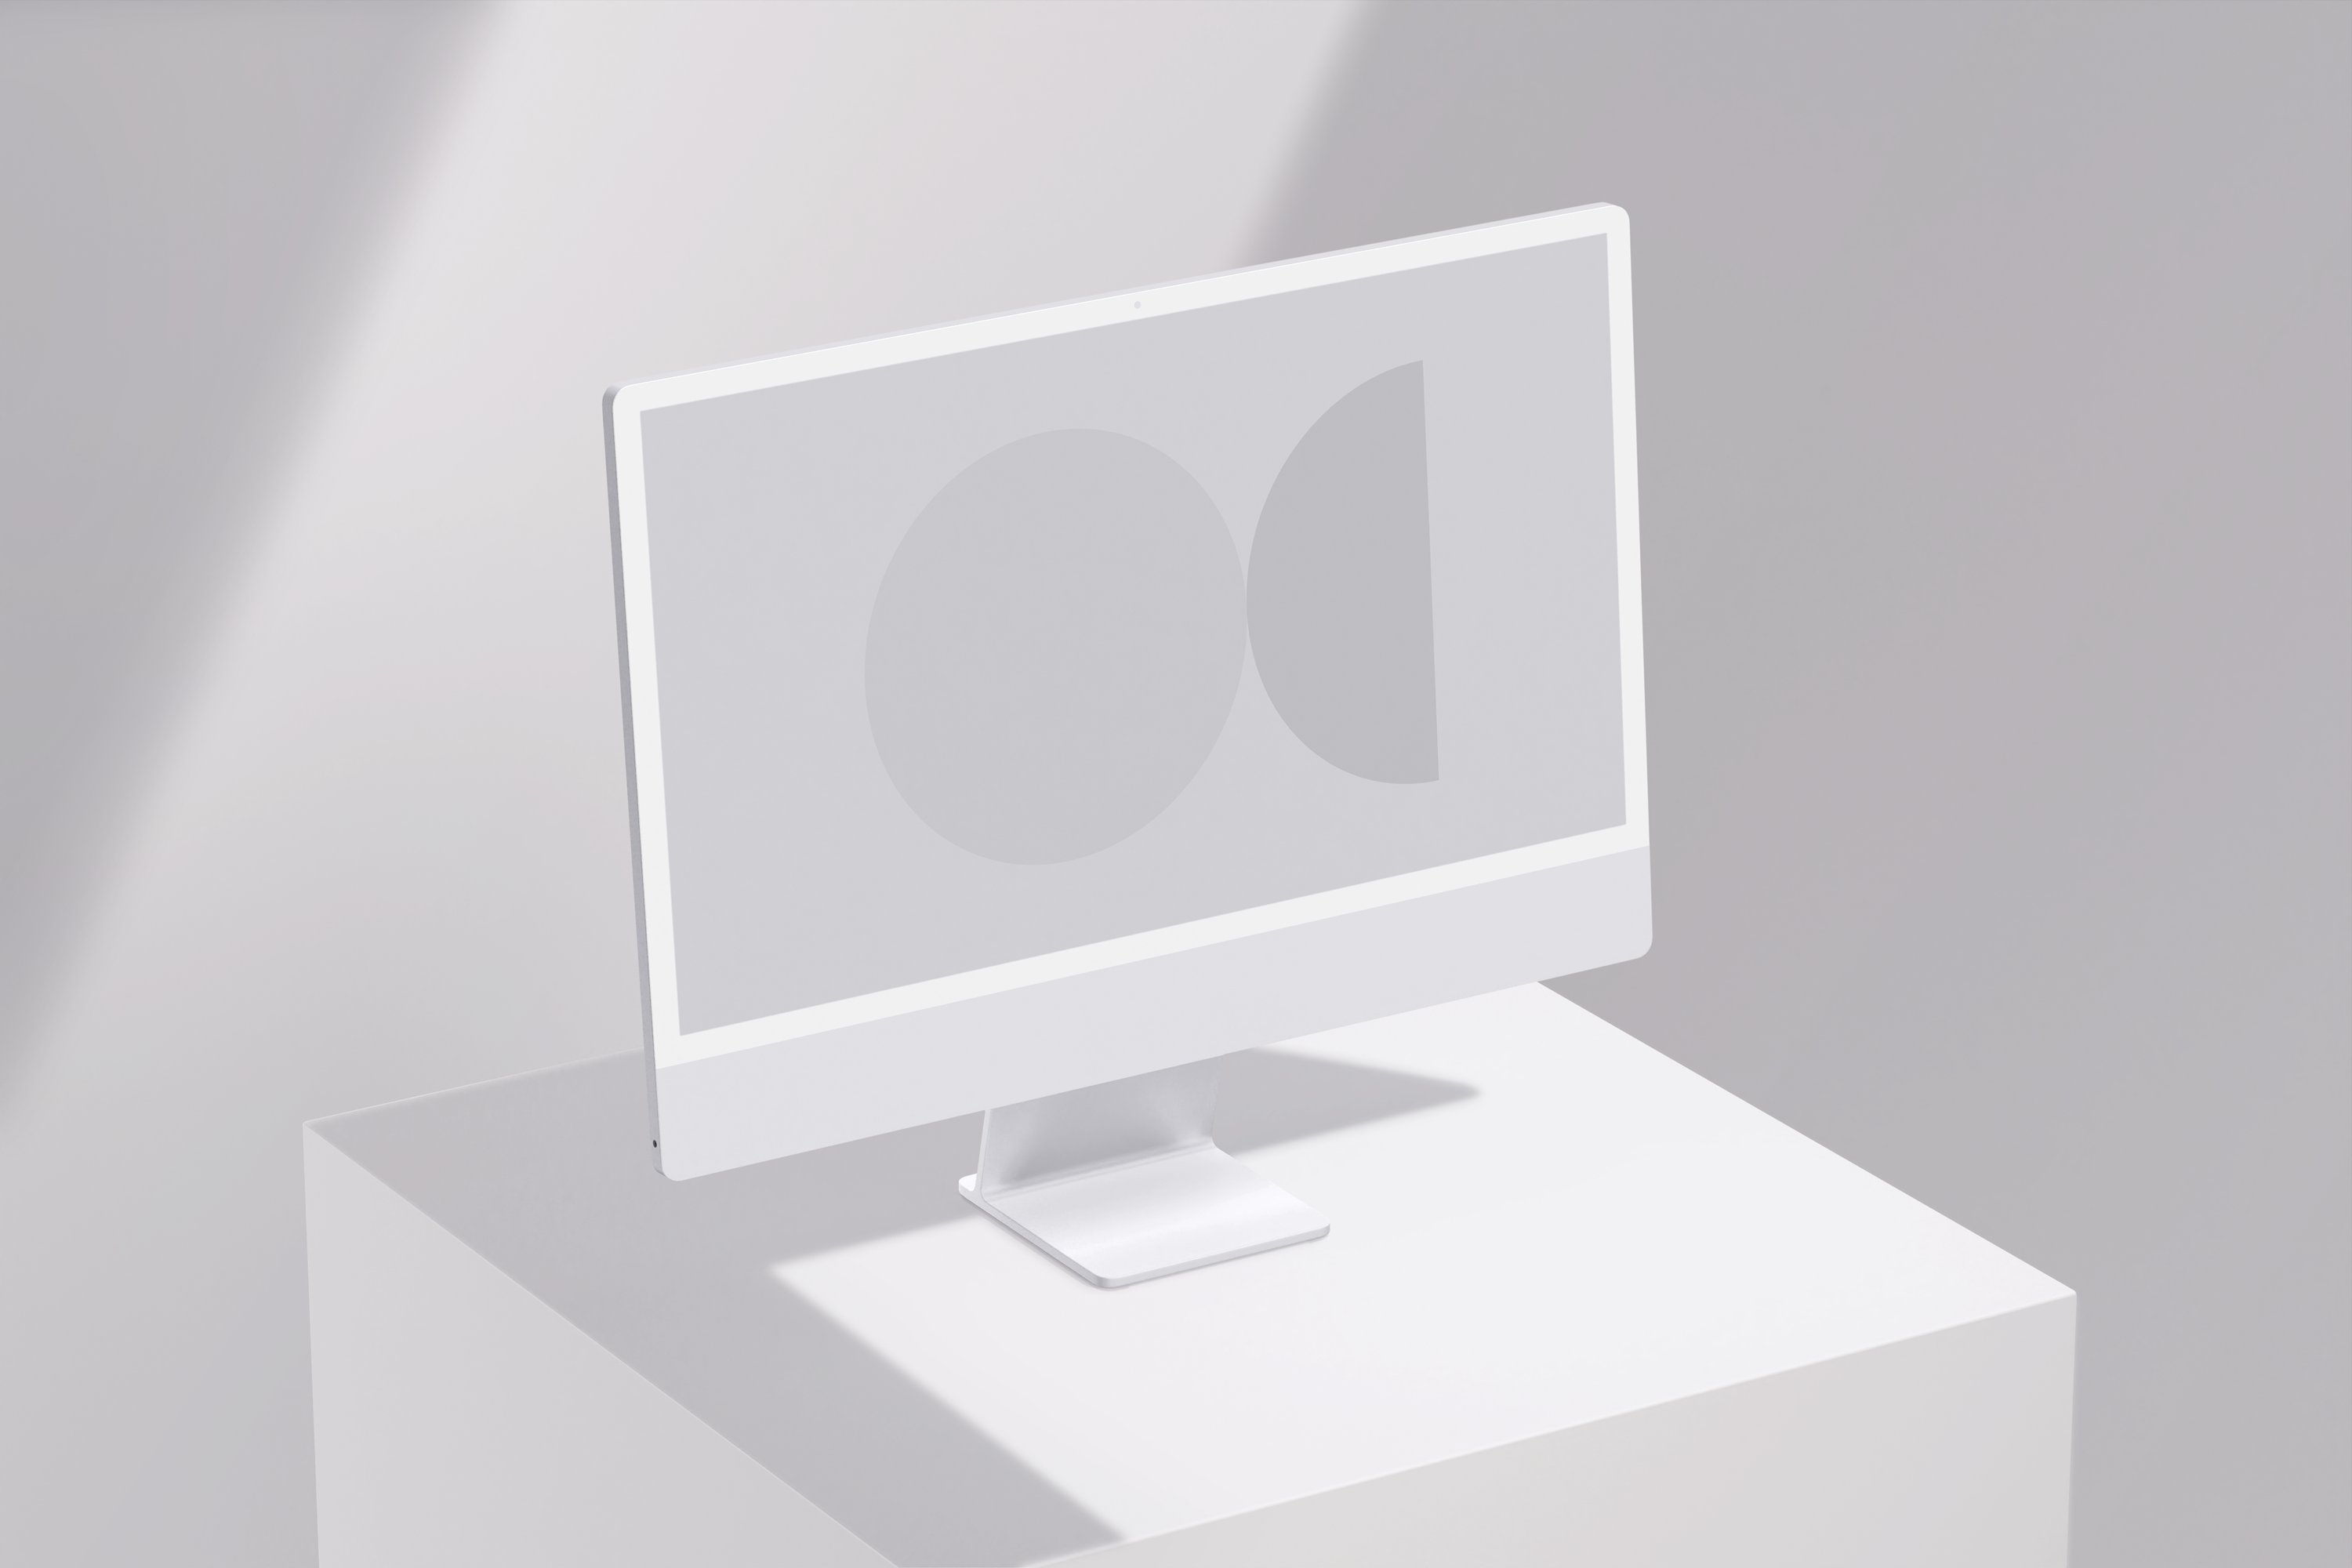 iMac Mockup Scene - 2 preview image.